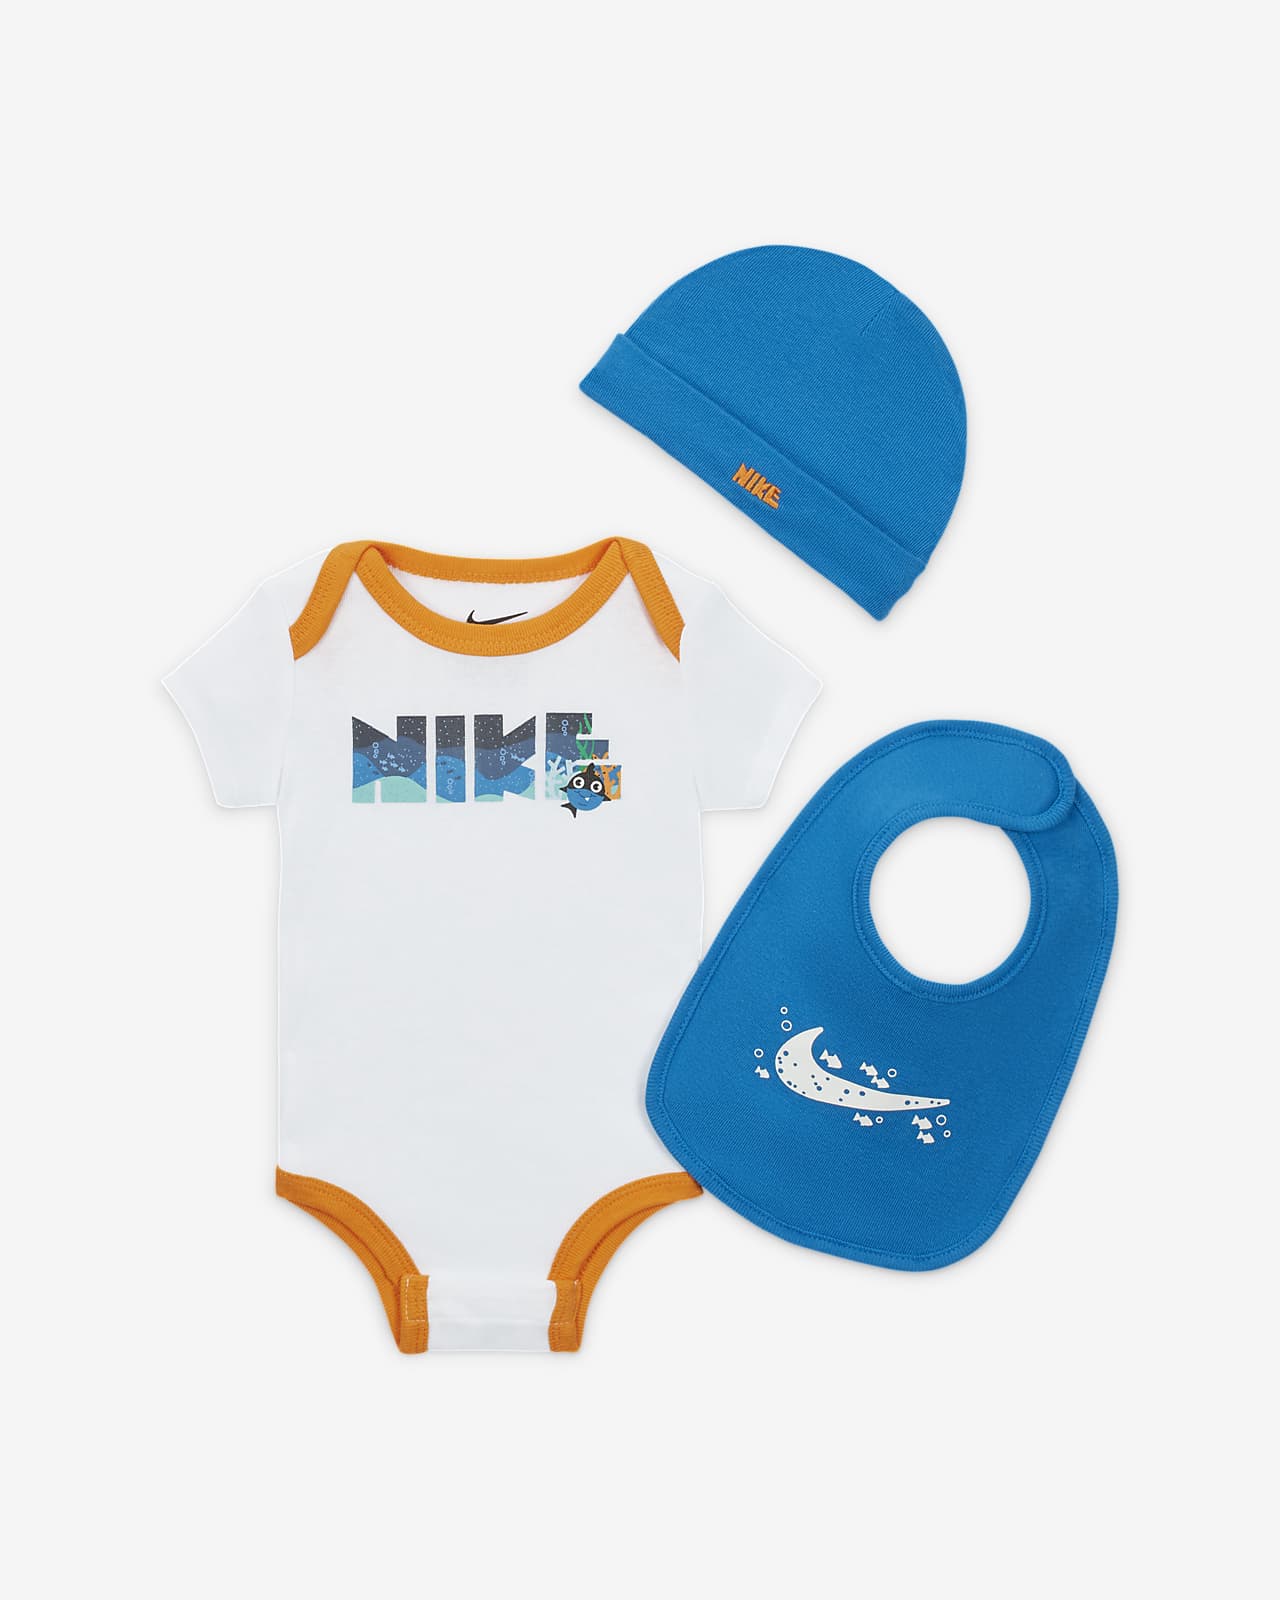 udtrykkeligt manuskript Dykker Nike sæt med pandebånd, hagesmæk og bodysuit til babyer. Nike DK